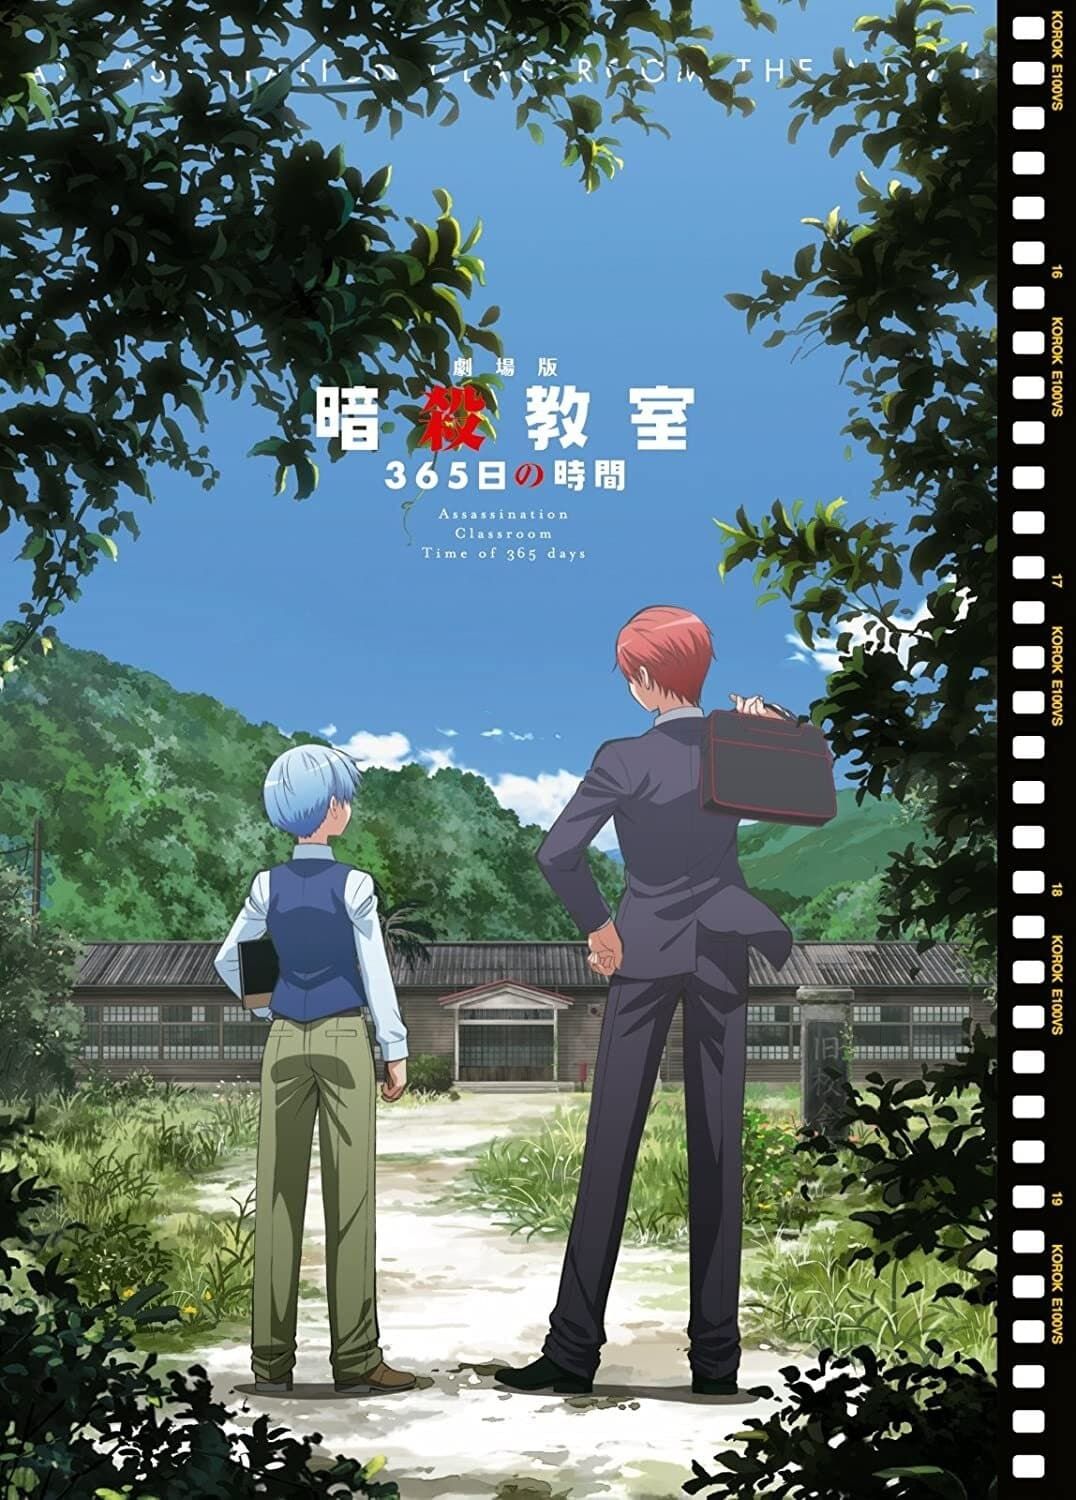 [Original] Ansatsu Kyoushitsu: 365-nichi no Jikan (Movie) (Sub)